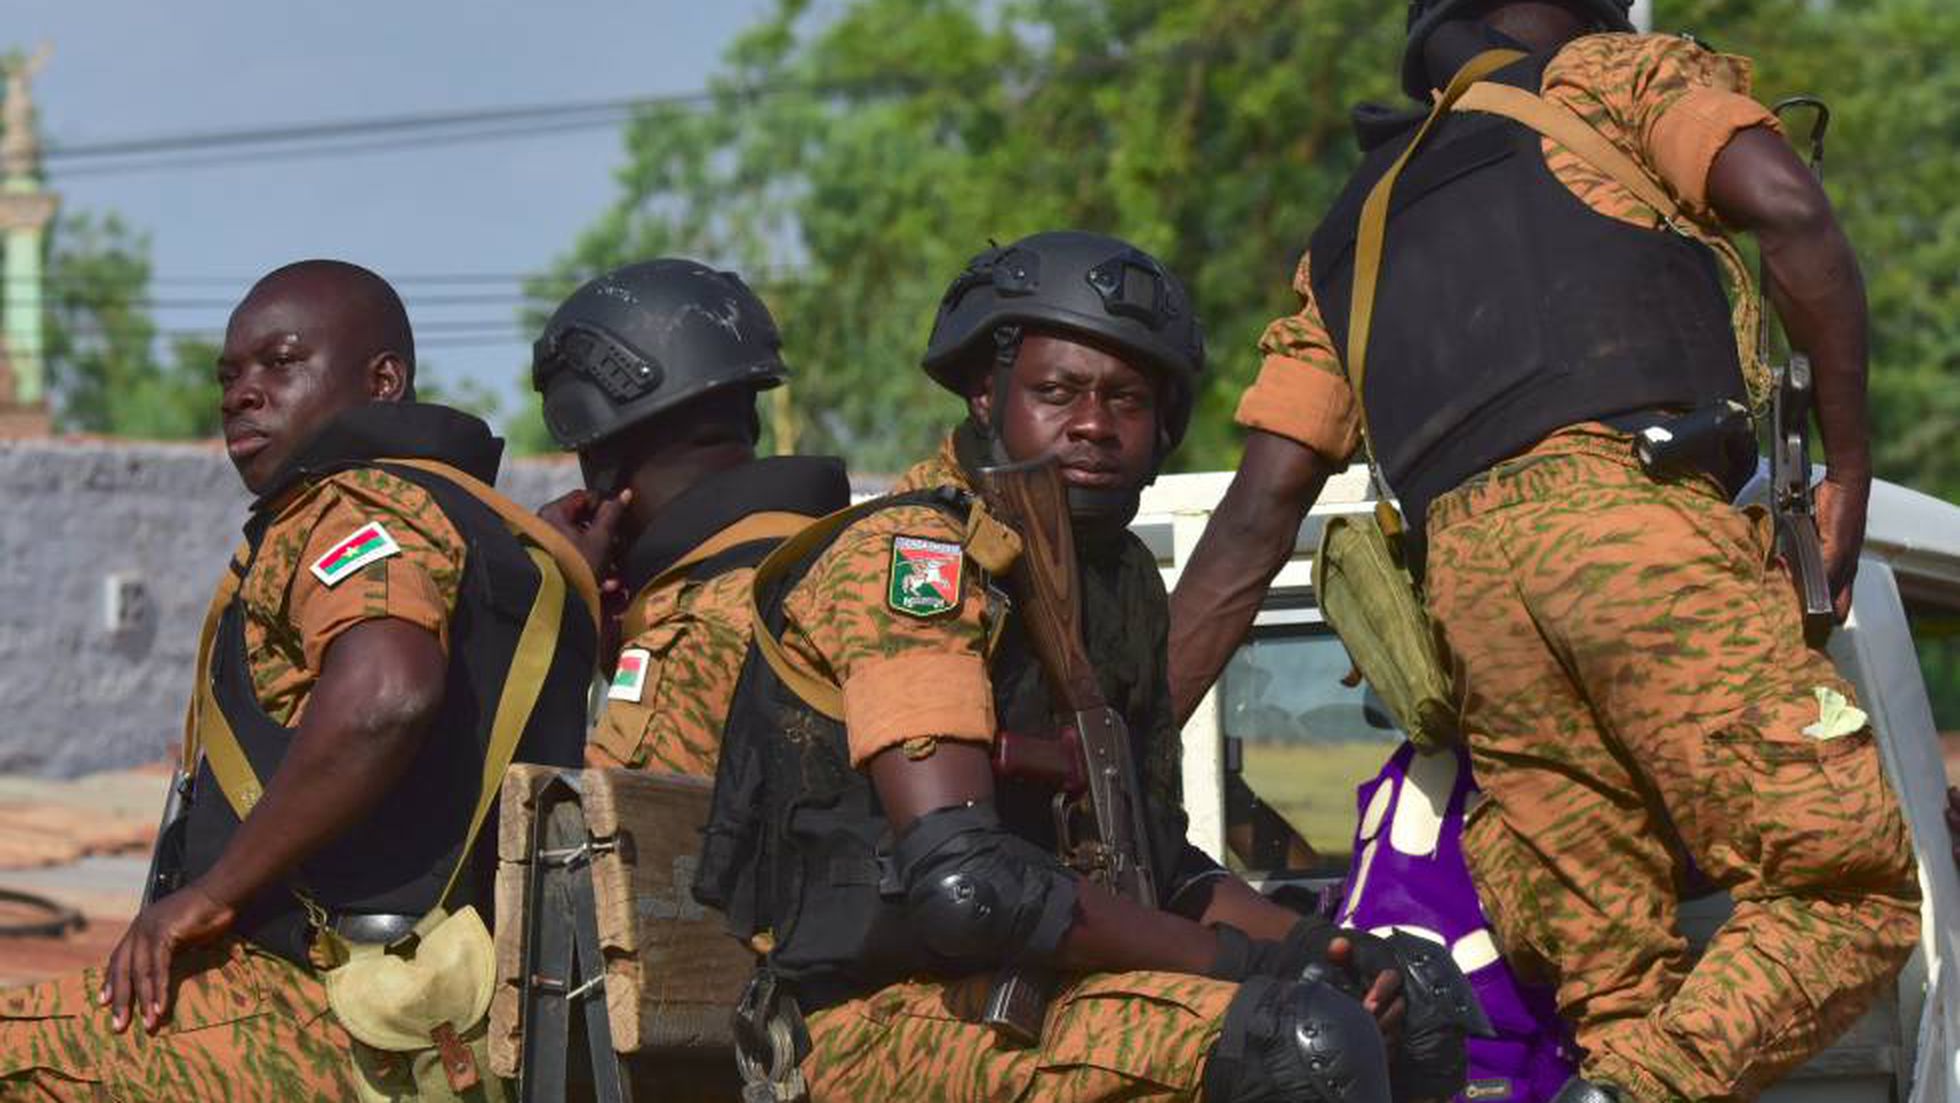 West Africa: बुर्किना फासो में एक साथ मिले 28 लोगों के शव, हत्या के कारण अभी तक अज्ञात